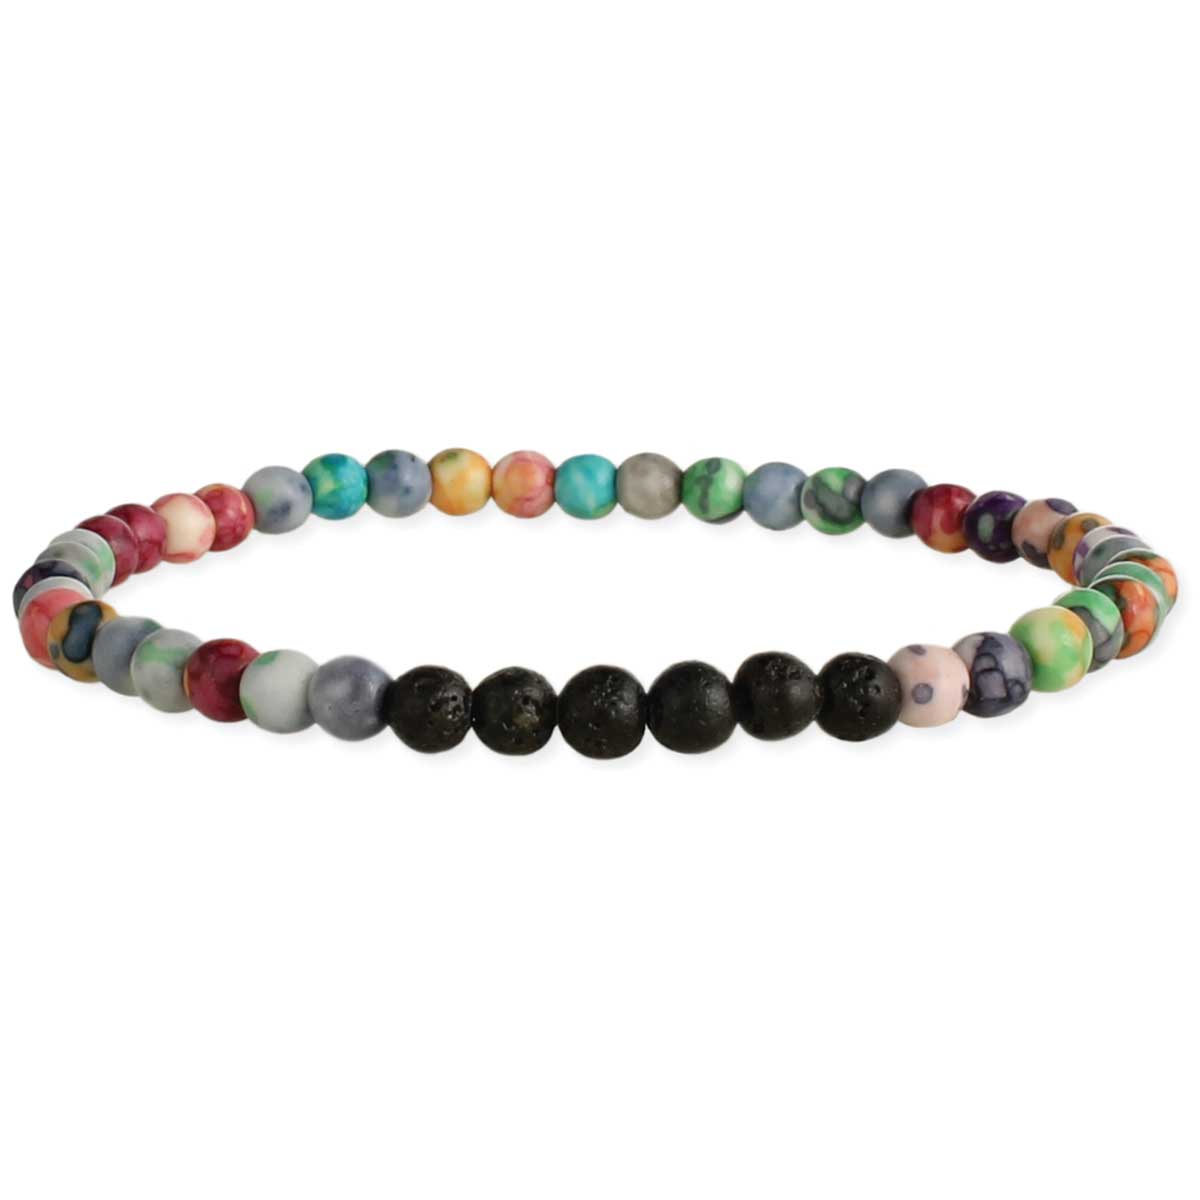 Rainbow marble lava bead bracelet